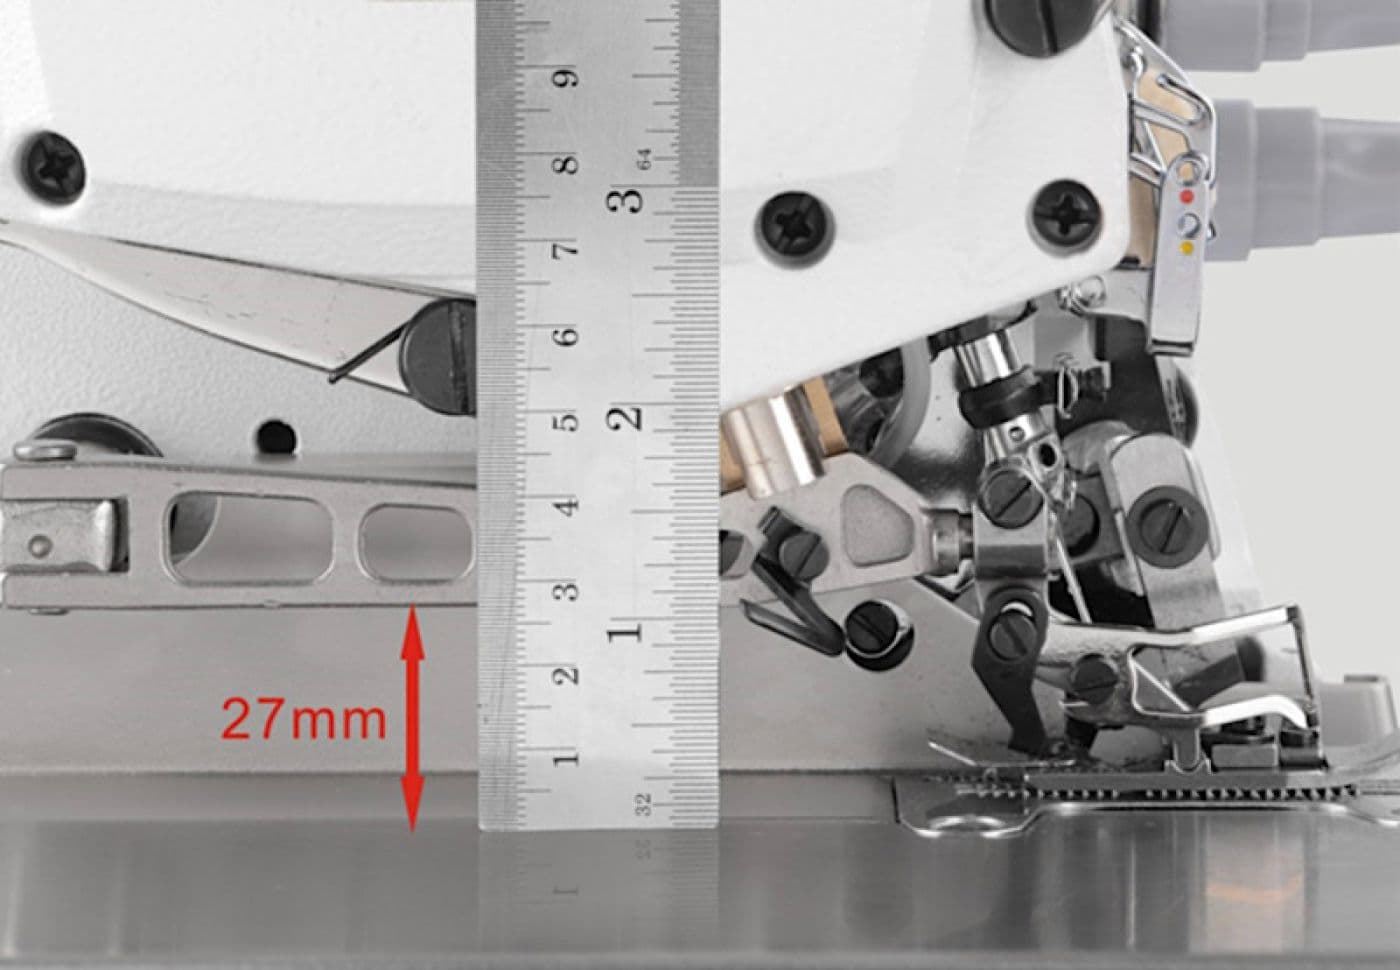 JACK JK-E4-5 (5 HILOS) - Máquina de coser industrial remalladora - Imagen 2